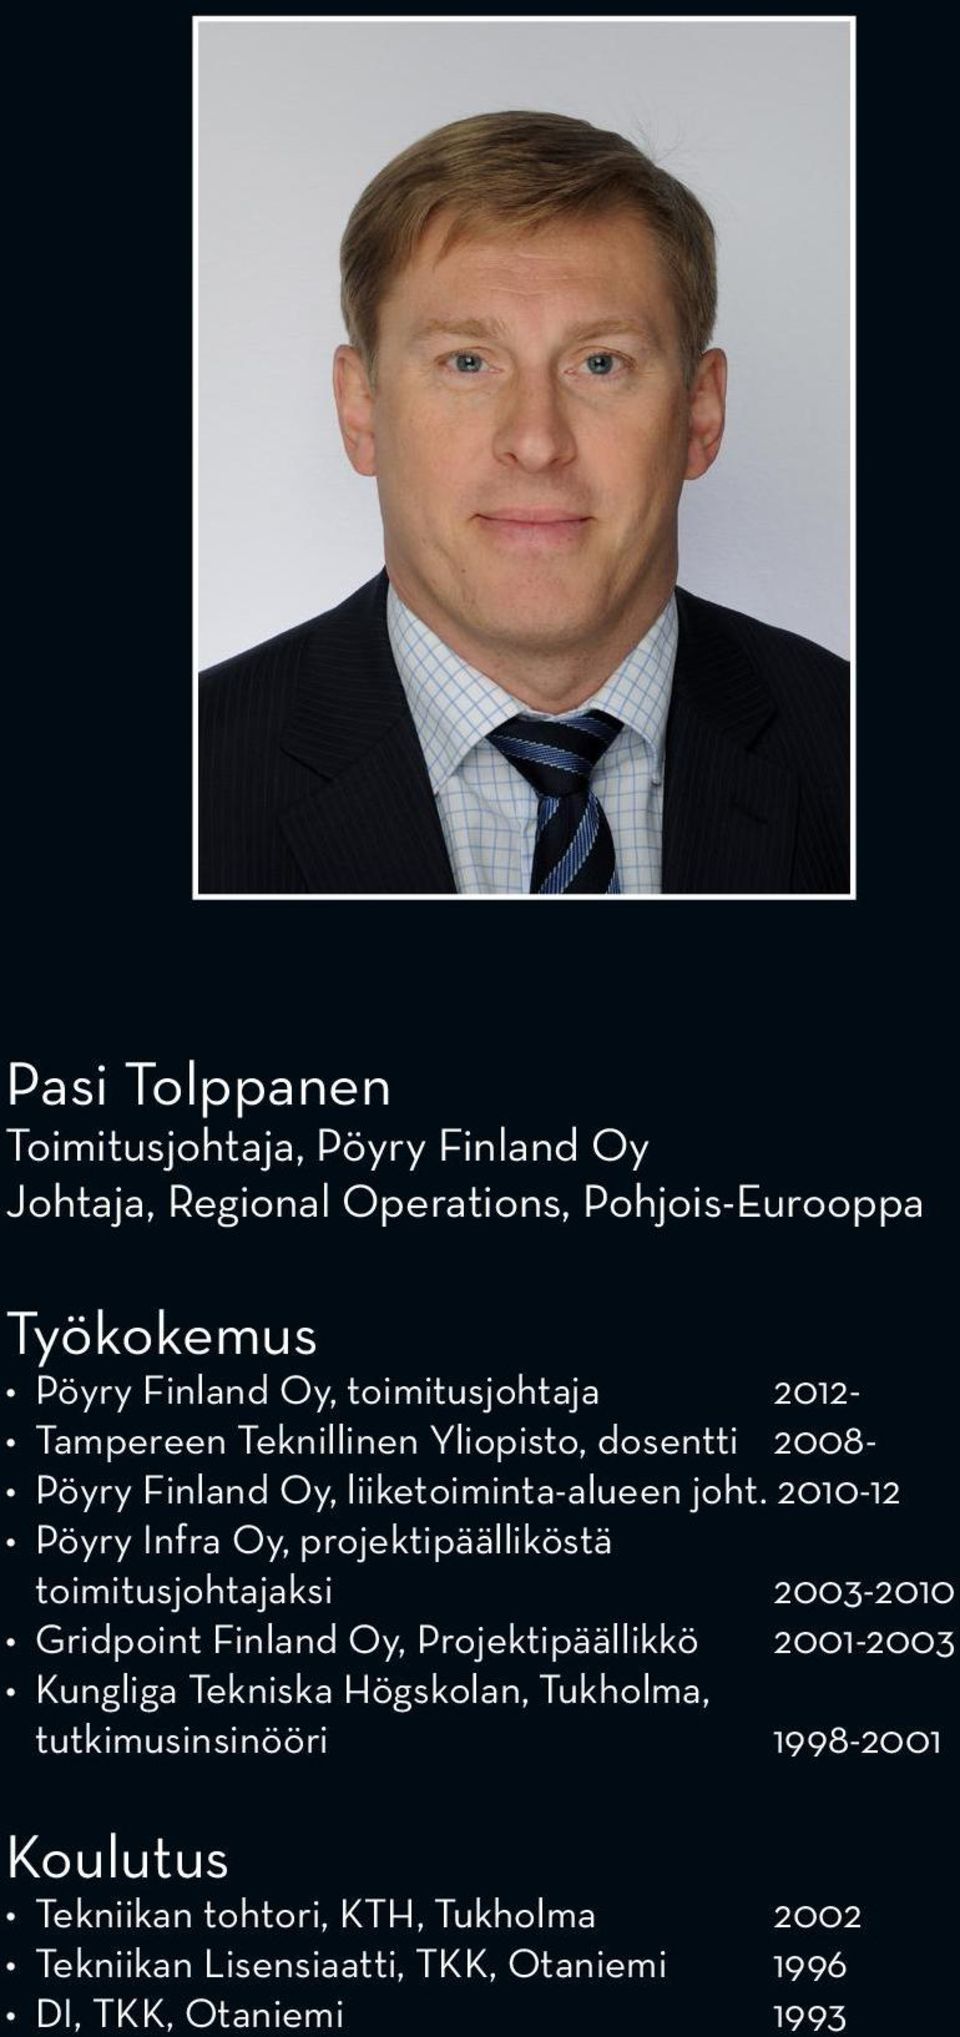 2010-12 Pöyry Infra Oy, projektipäälliköstä toimitusjohtajaksi 2003-2010 Gridpoint Finland Oy, Projektipäällikkö 2001-2003 Kungliga